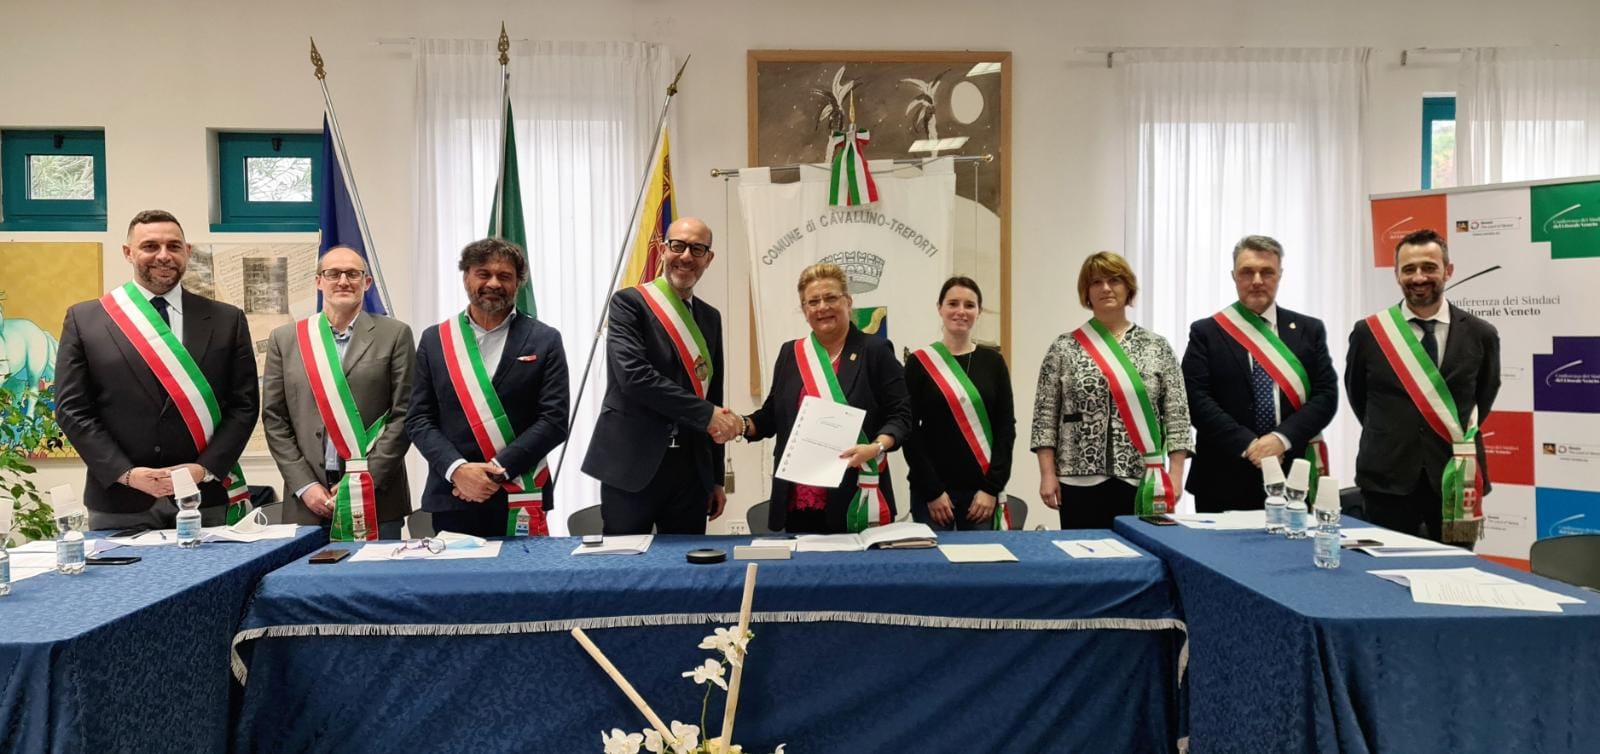 Il Comune di Venezia entra ufficialmente nell’Associazione “Conferenza Sindaci del Litorale Veneto”.